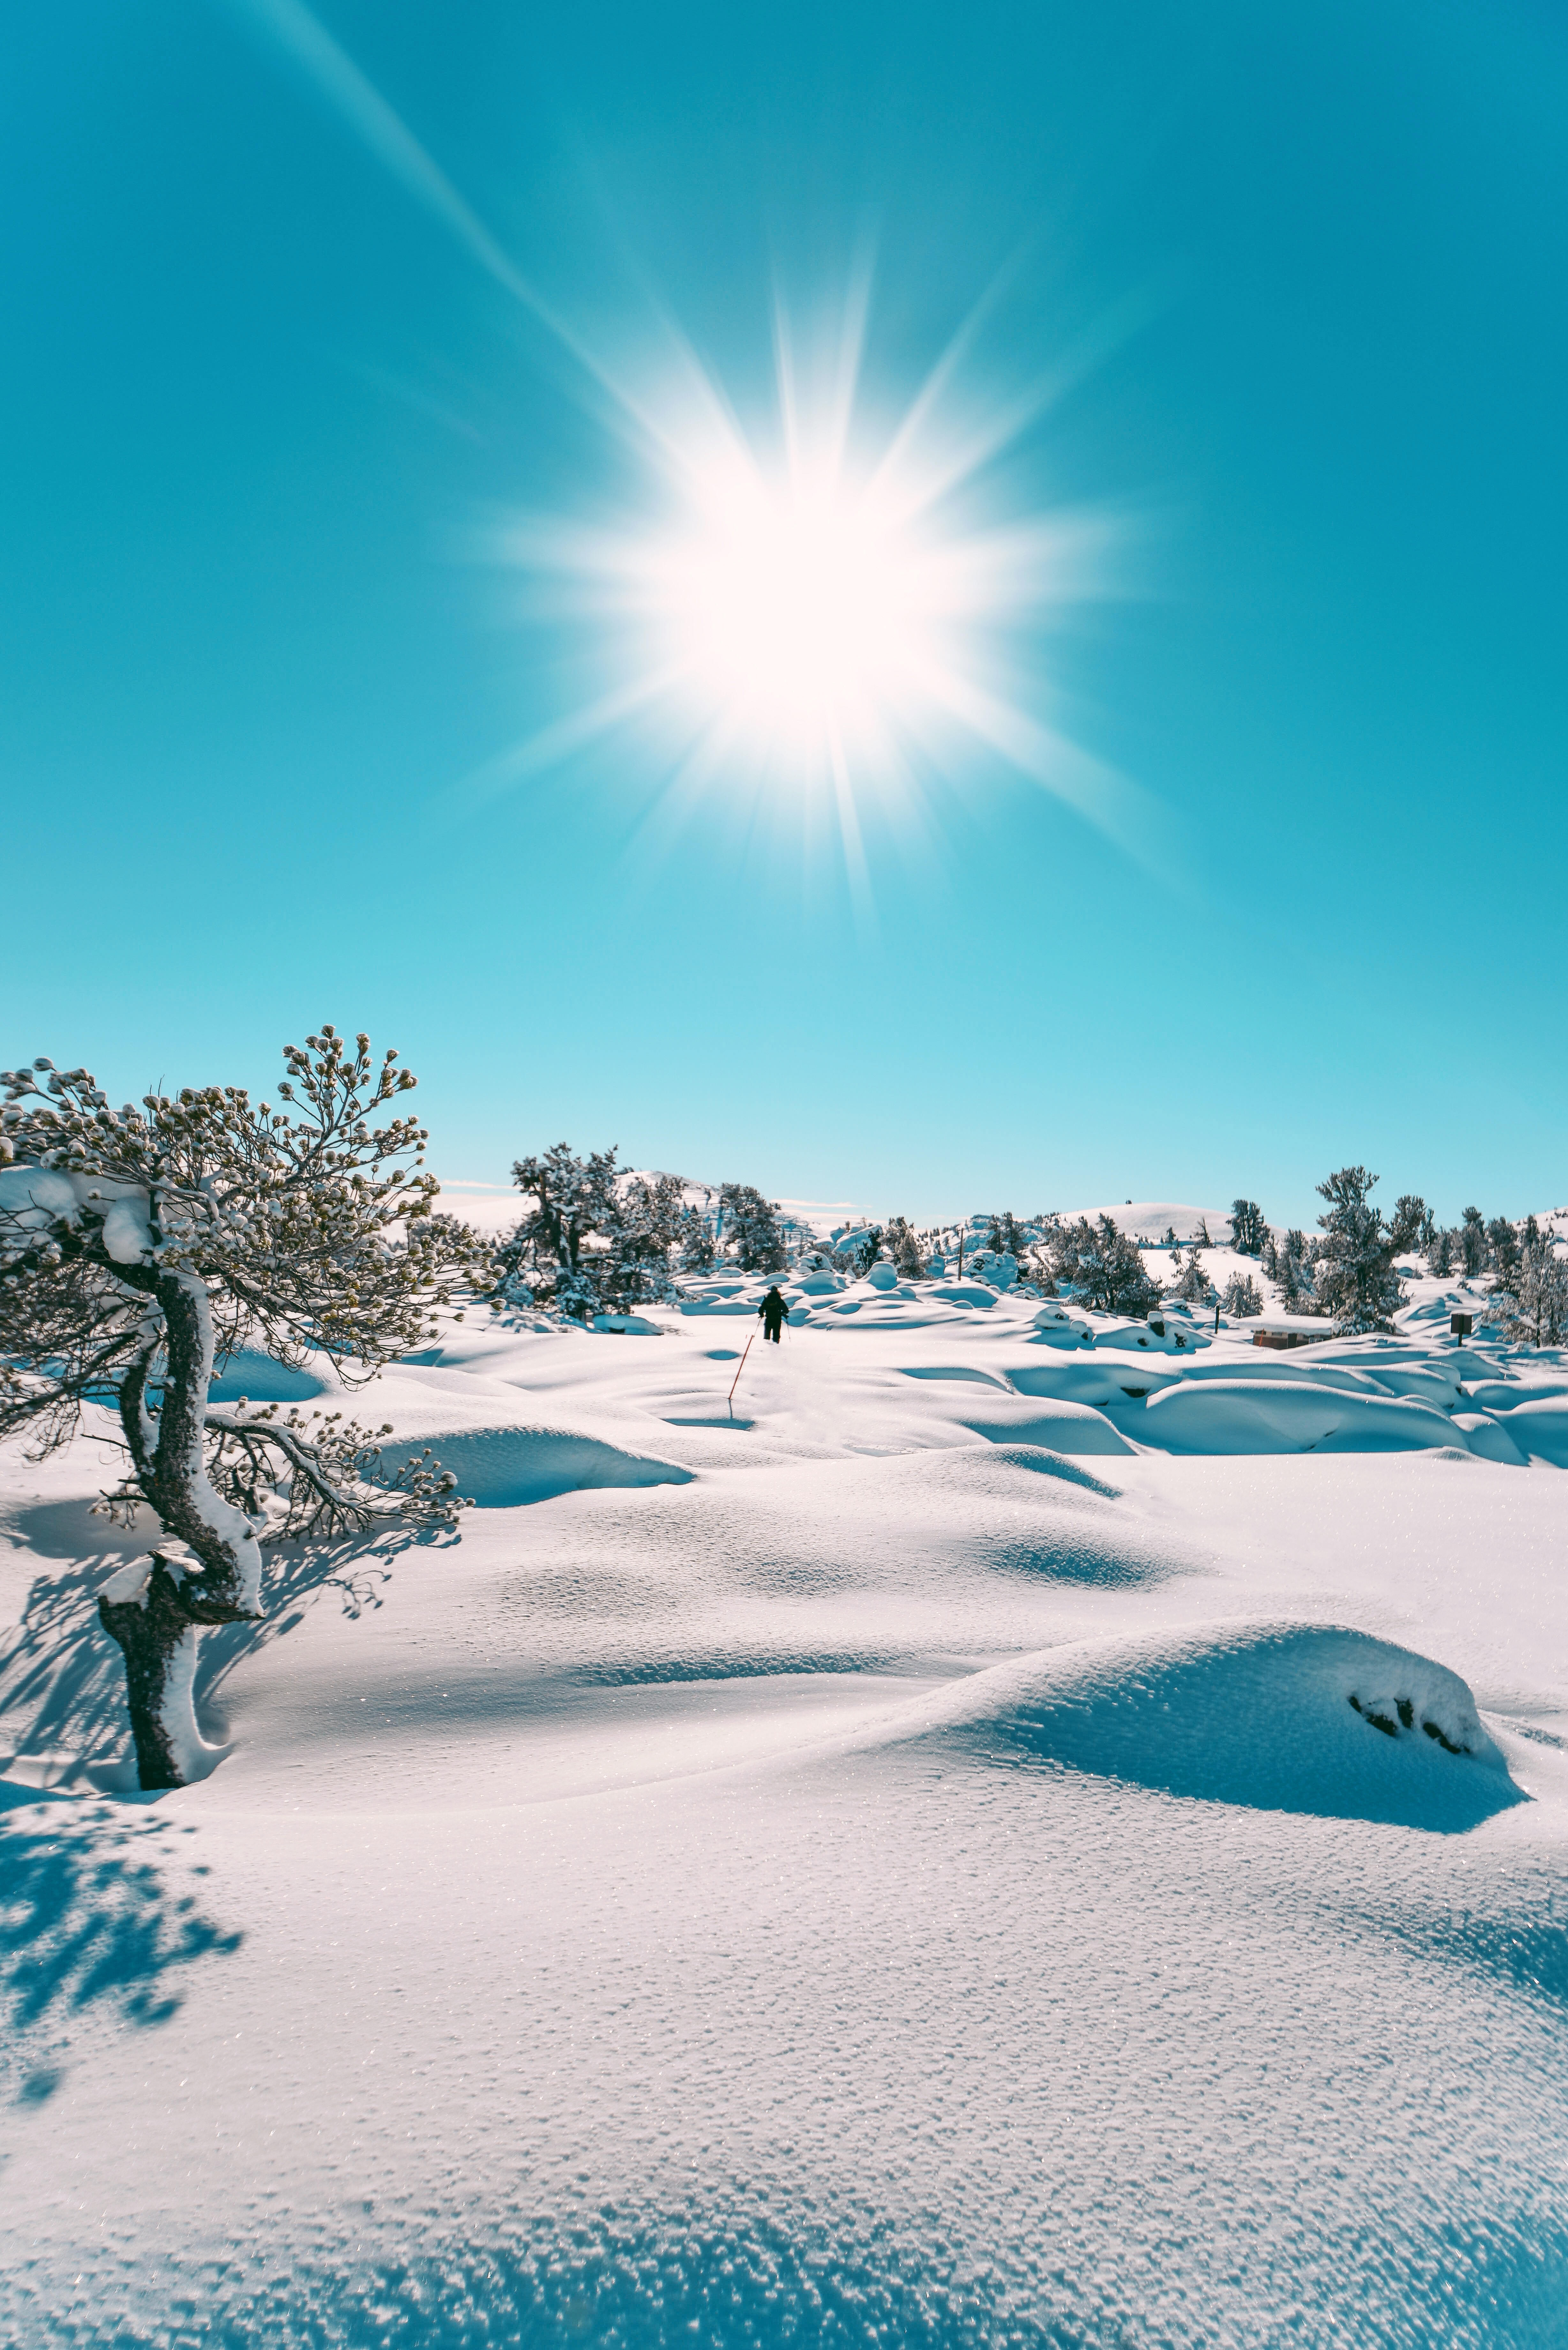 Скачать обои бесплатно Снег, Природа, Солнце, Зима, Пейзаж картинка на рабочий стол ПК